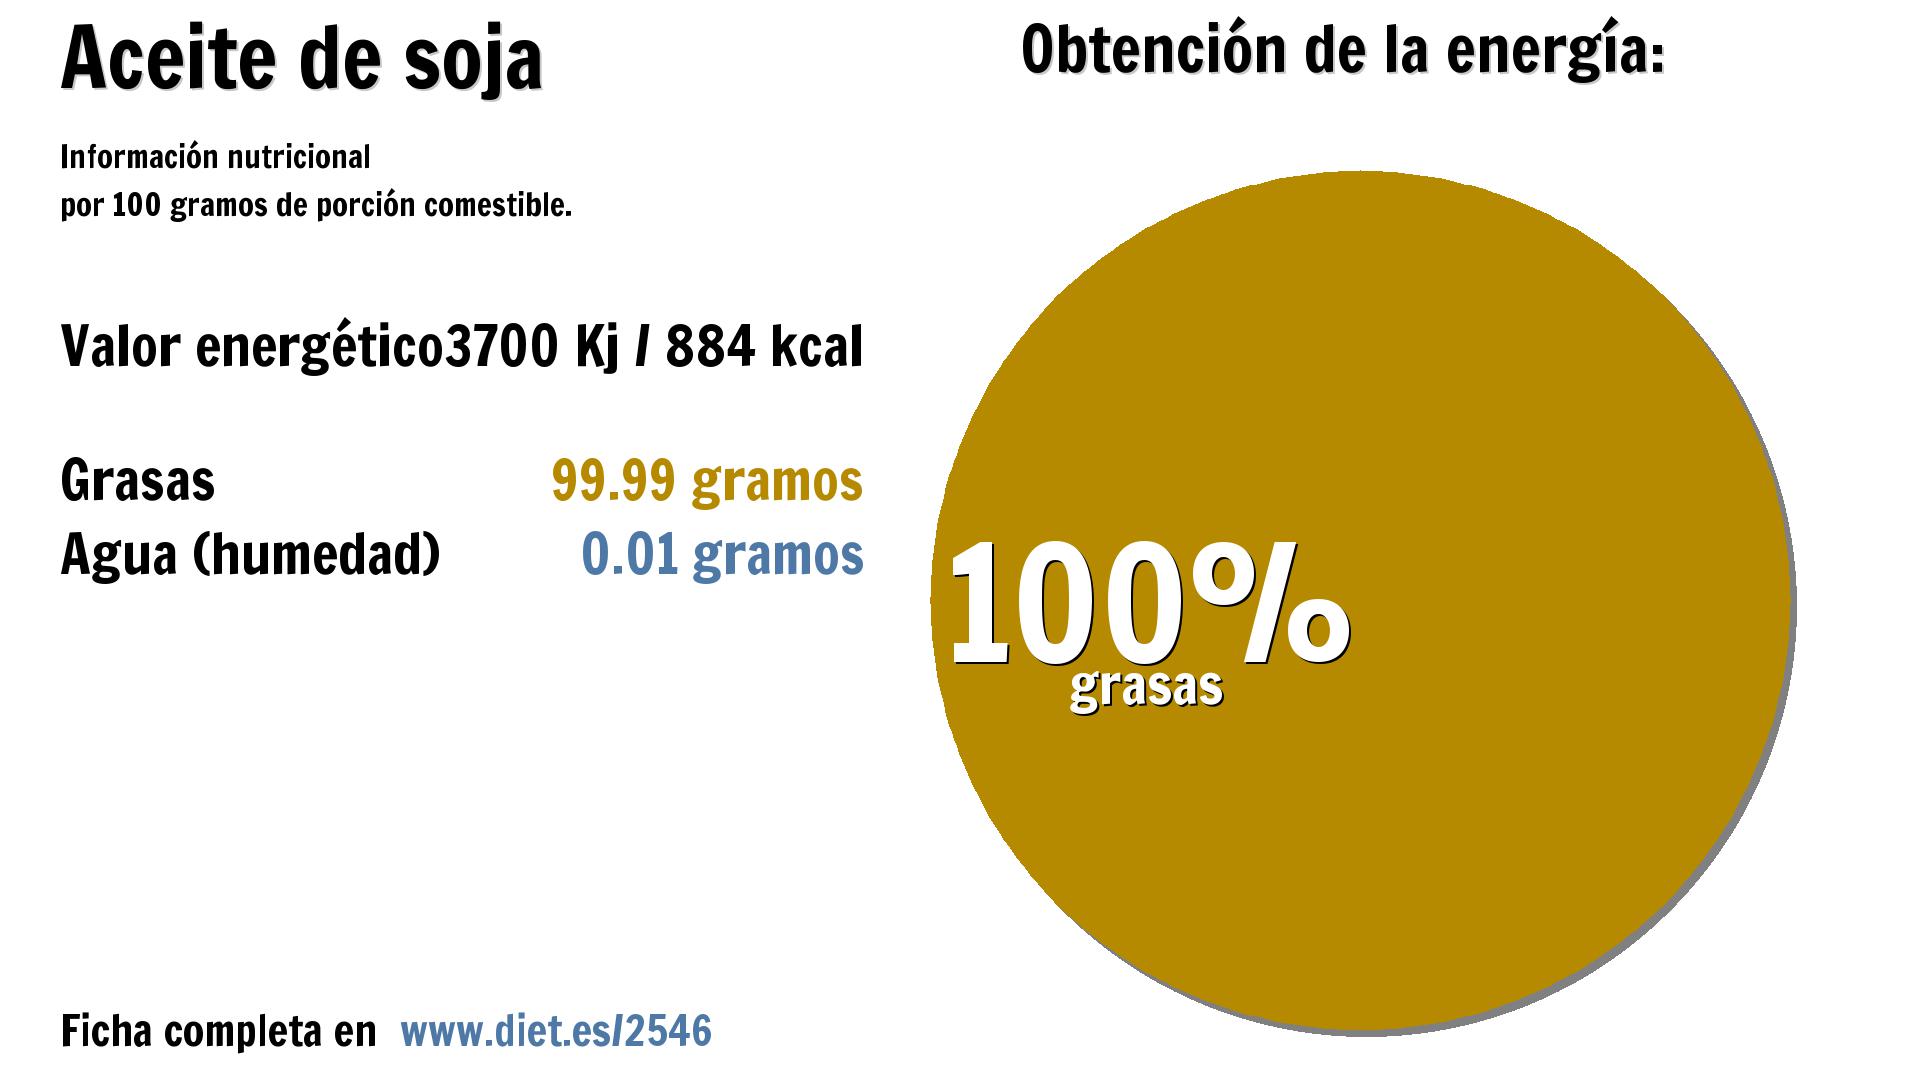 Aceite de soja: energía 3700 Kj y grasas 100 g.